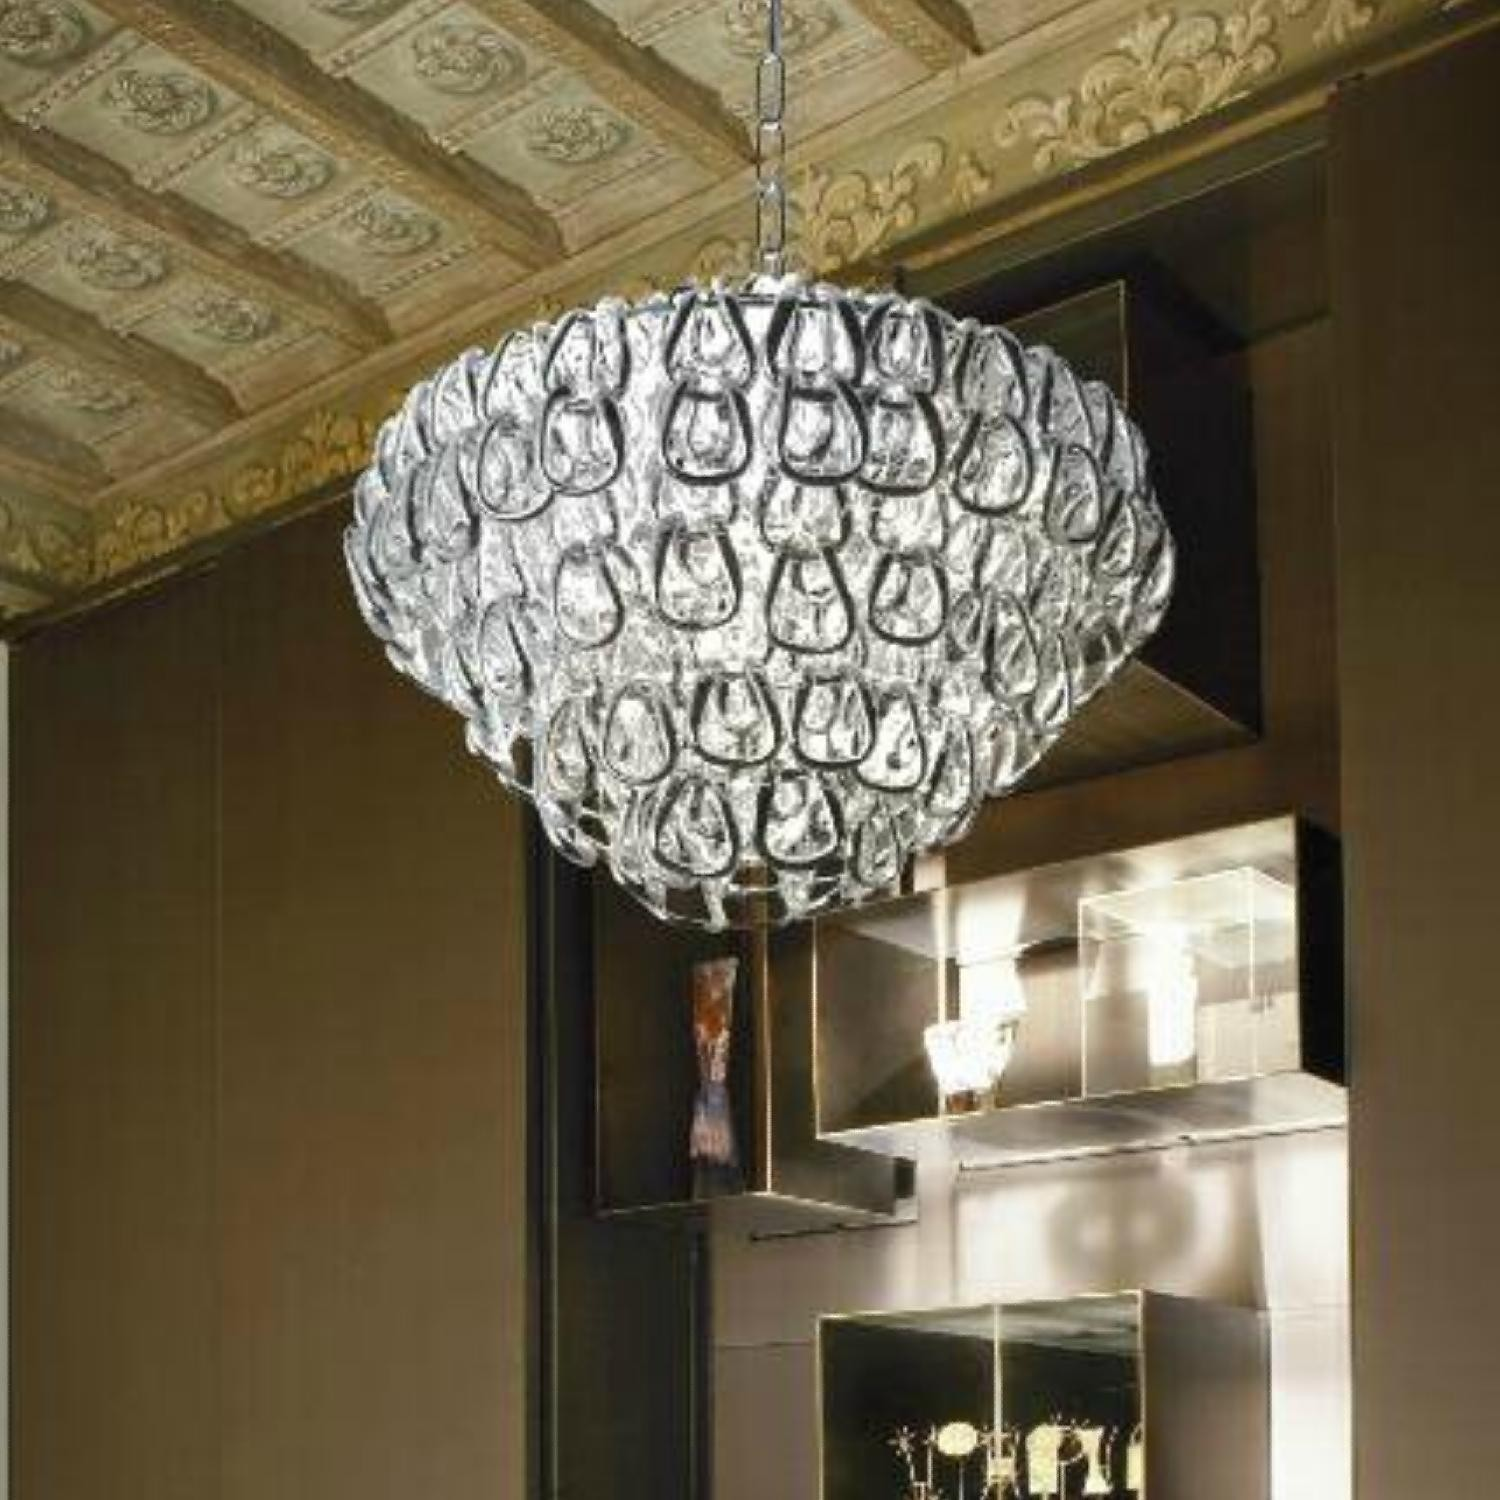 Minigiogali colgante Diseño: Angelo Mangiarotti 1967, diseño actualizado en 2009. Lámpara compuesta de elementos de cristal realizados totalmente a mano, combinadas con una estructura metálica.